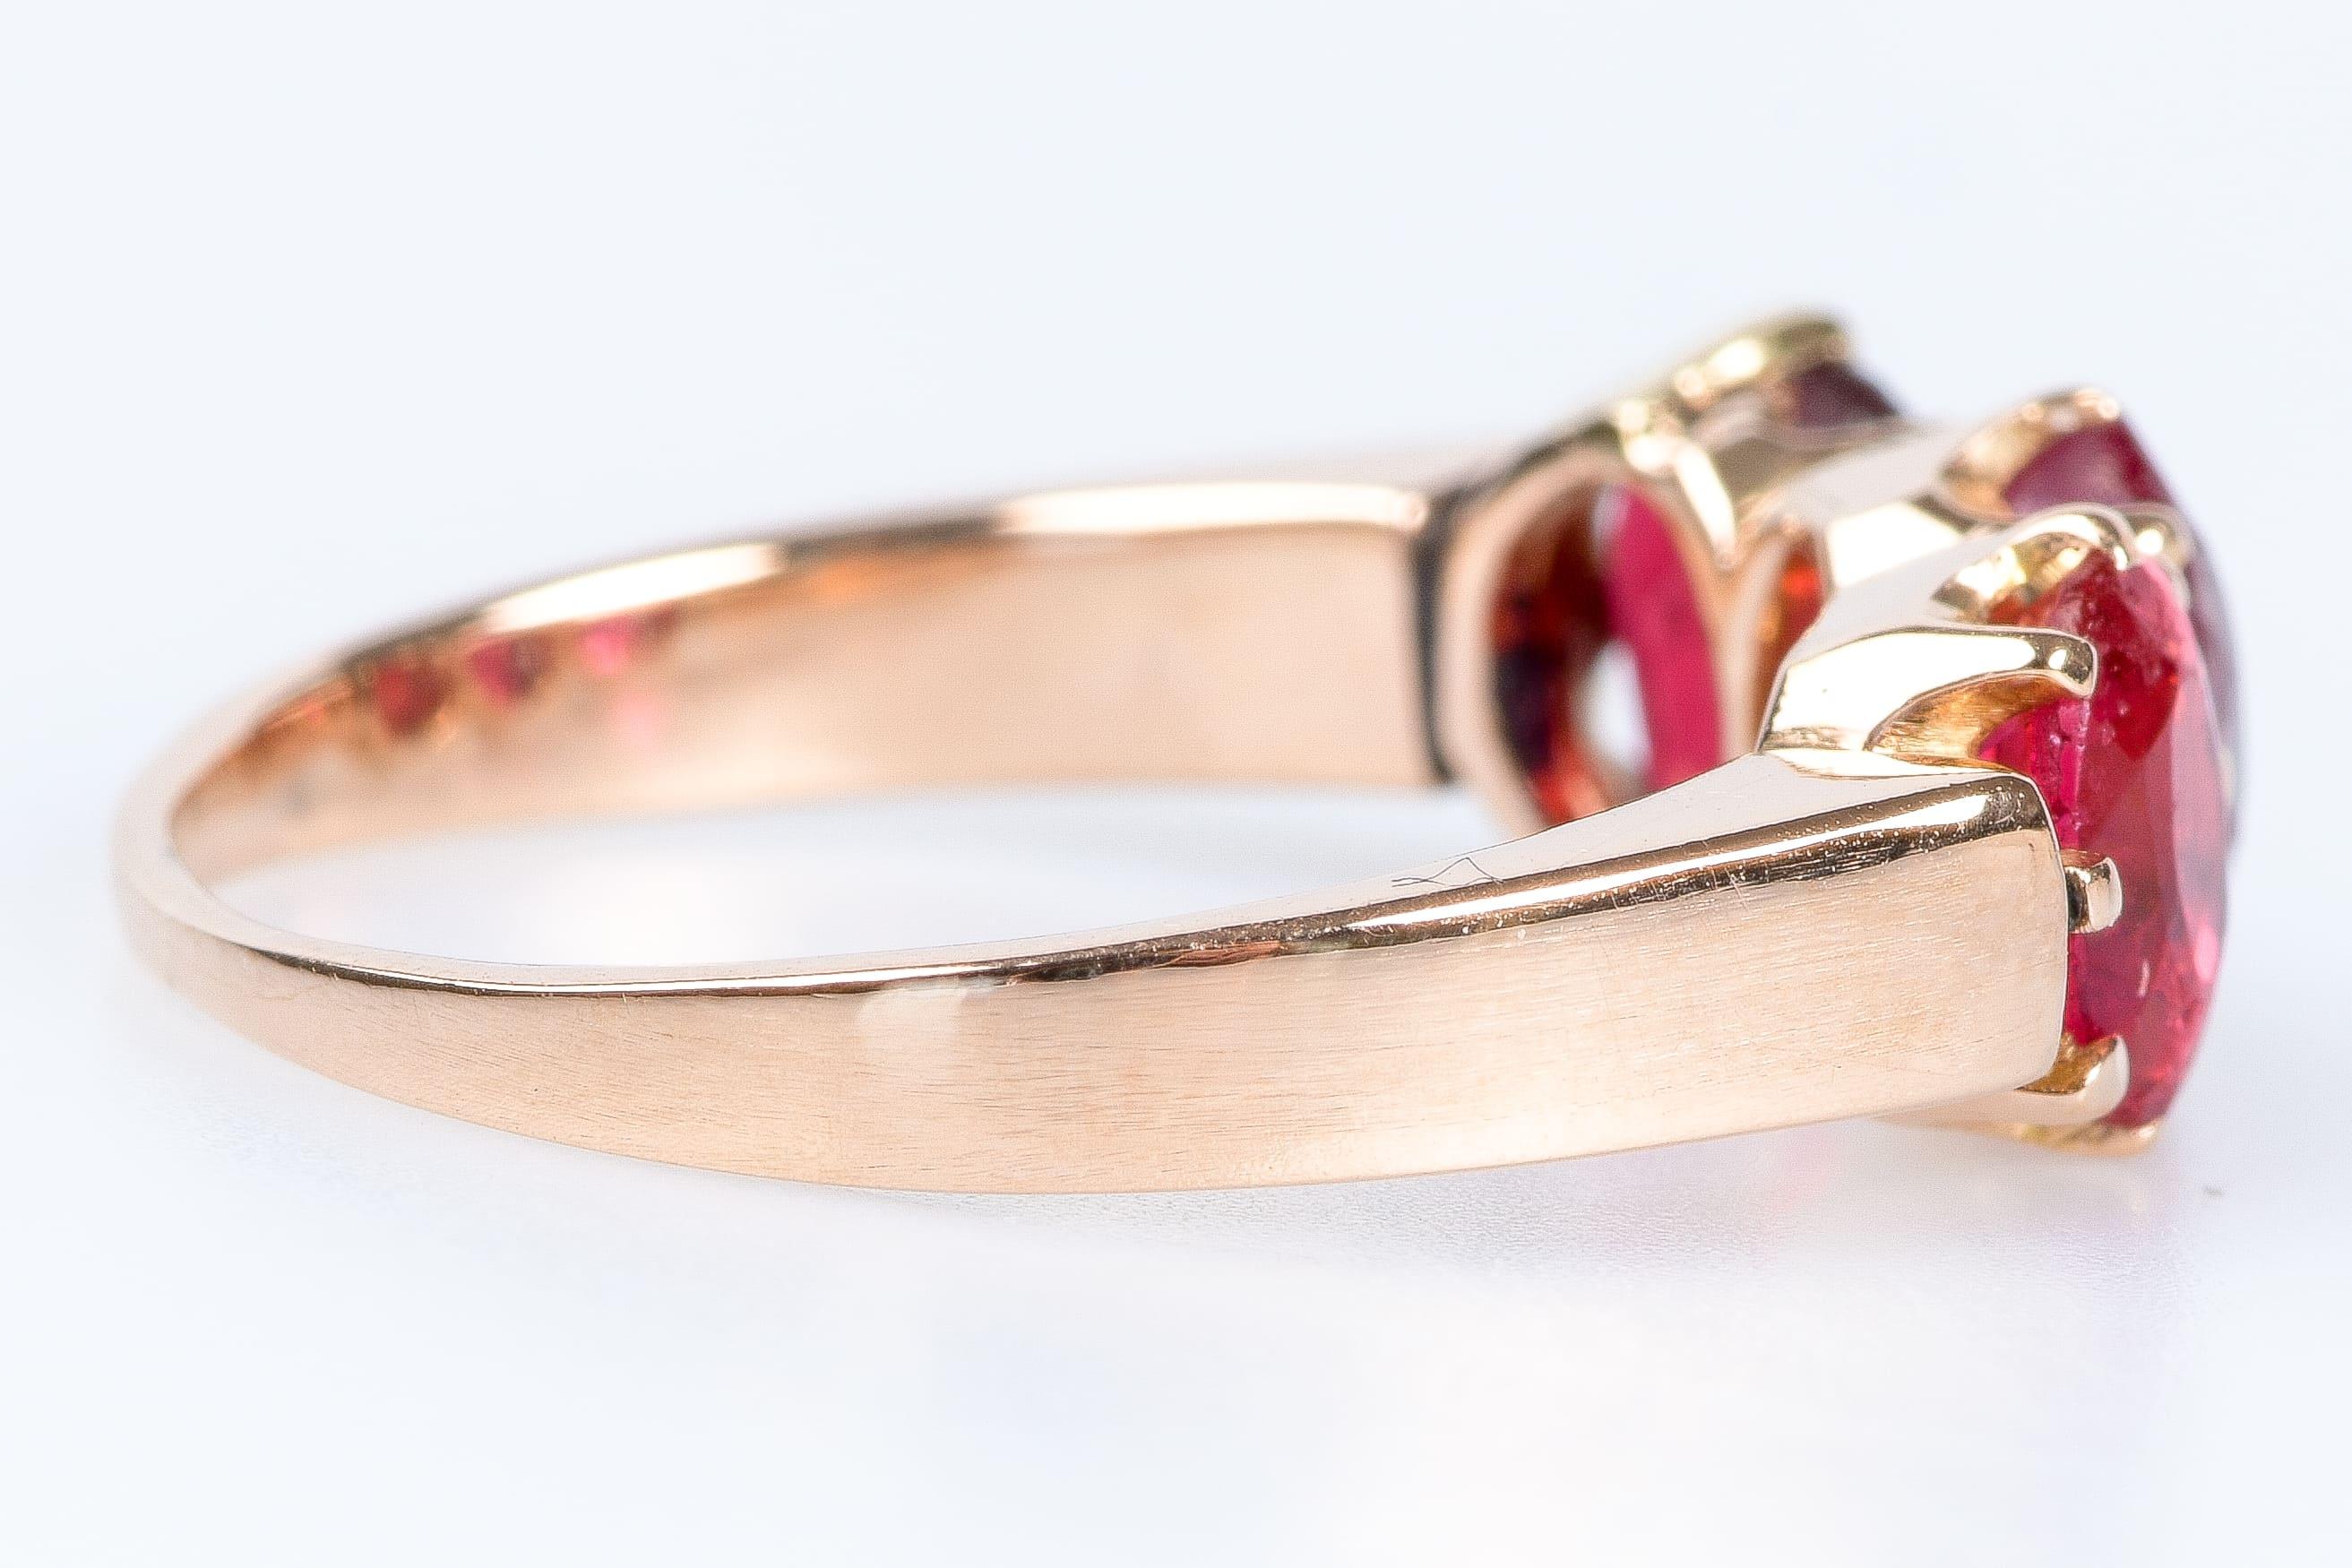 Ring aus 18 Karat Rotgold mit 3 ovalen Rubinen von je 0,22 Karat oder insgesamt 0,66 Karat.

Größe EU: 52 / US: 6

Gewicht: 3,7 Gramm

Abmessungen: 
1,6 x 0,5 cm
Ring: 0,1 cm

Goldene 